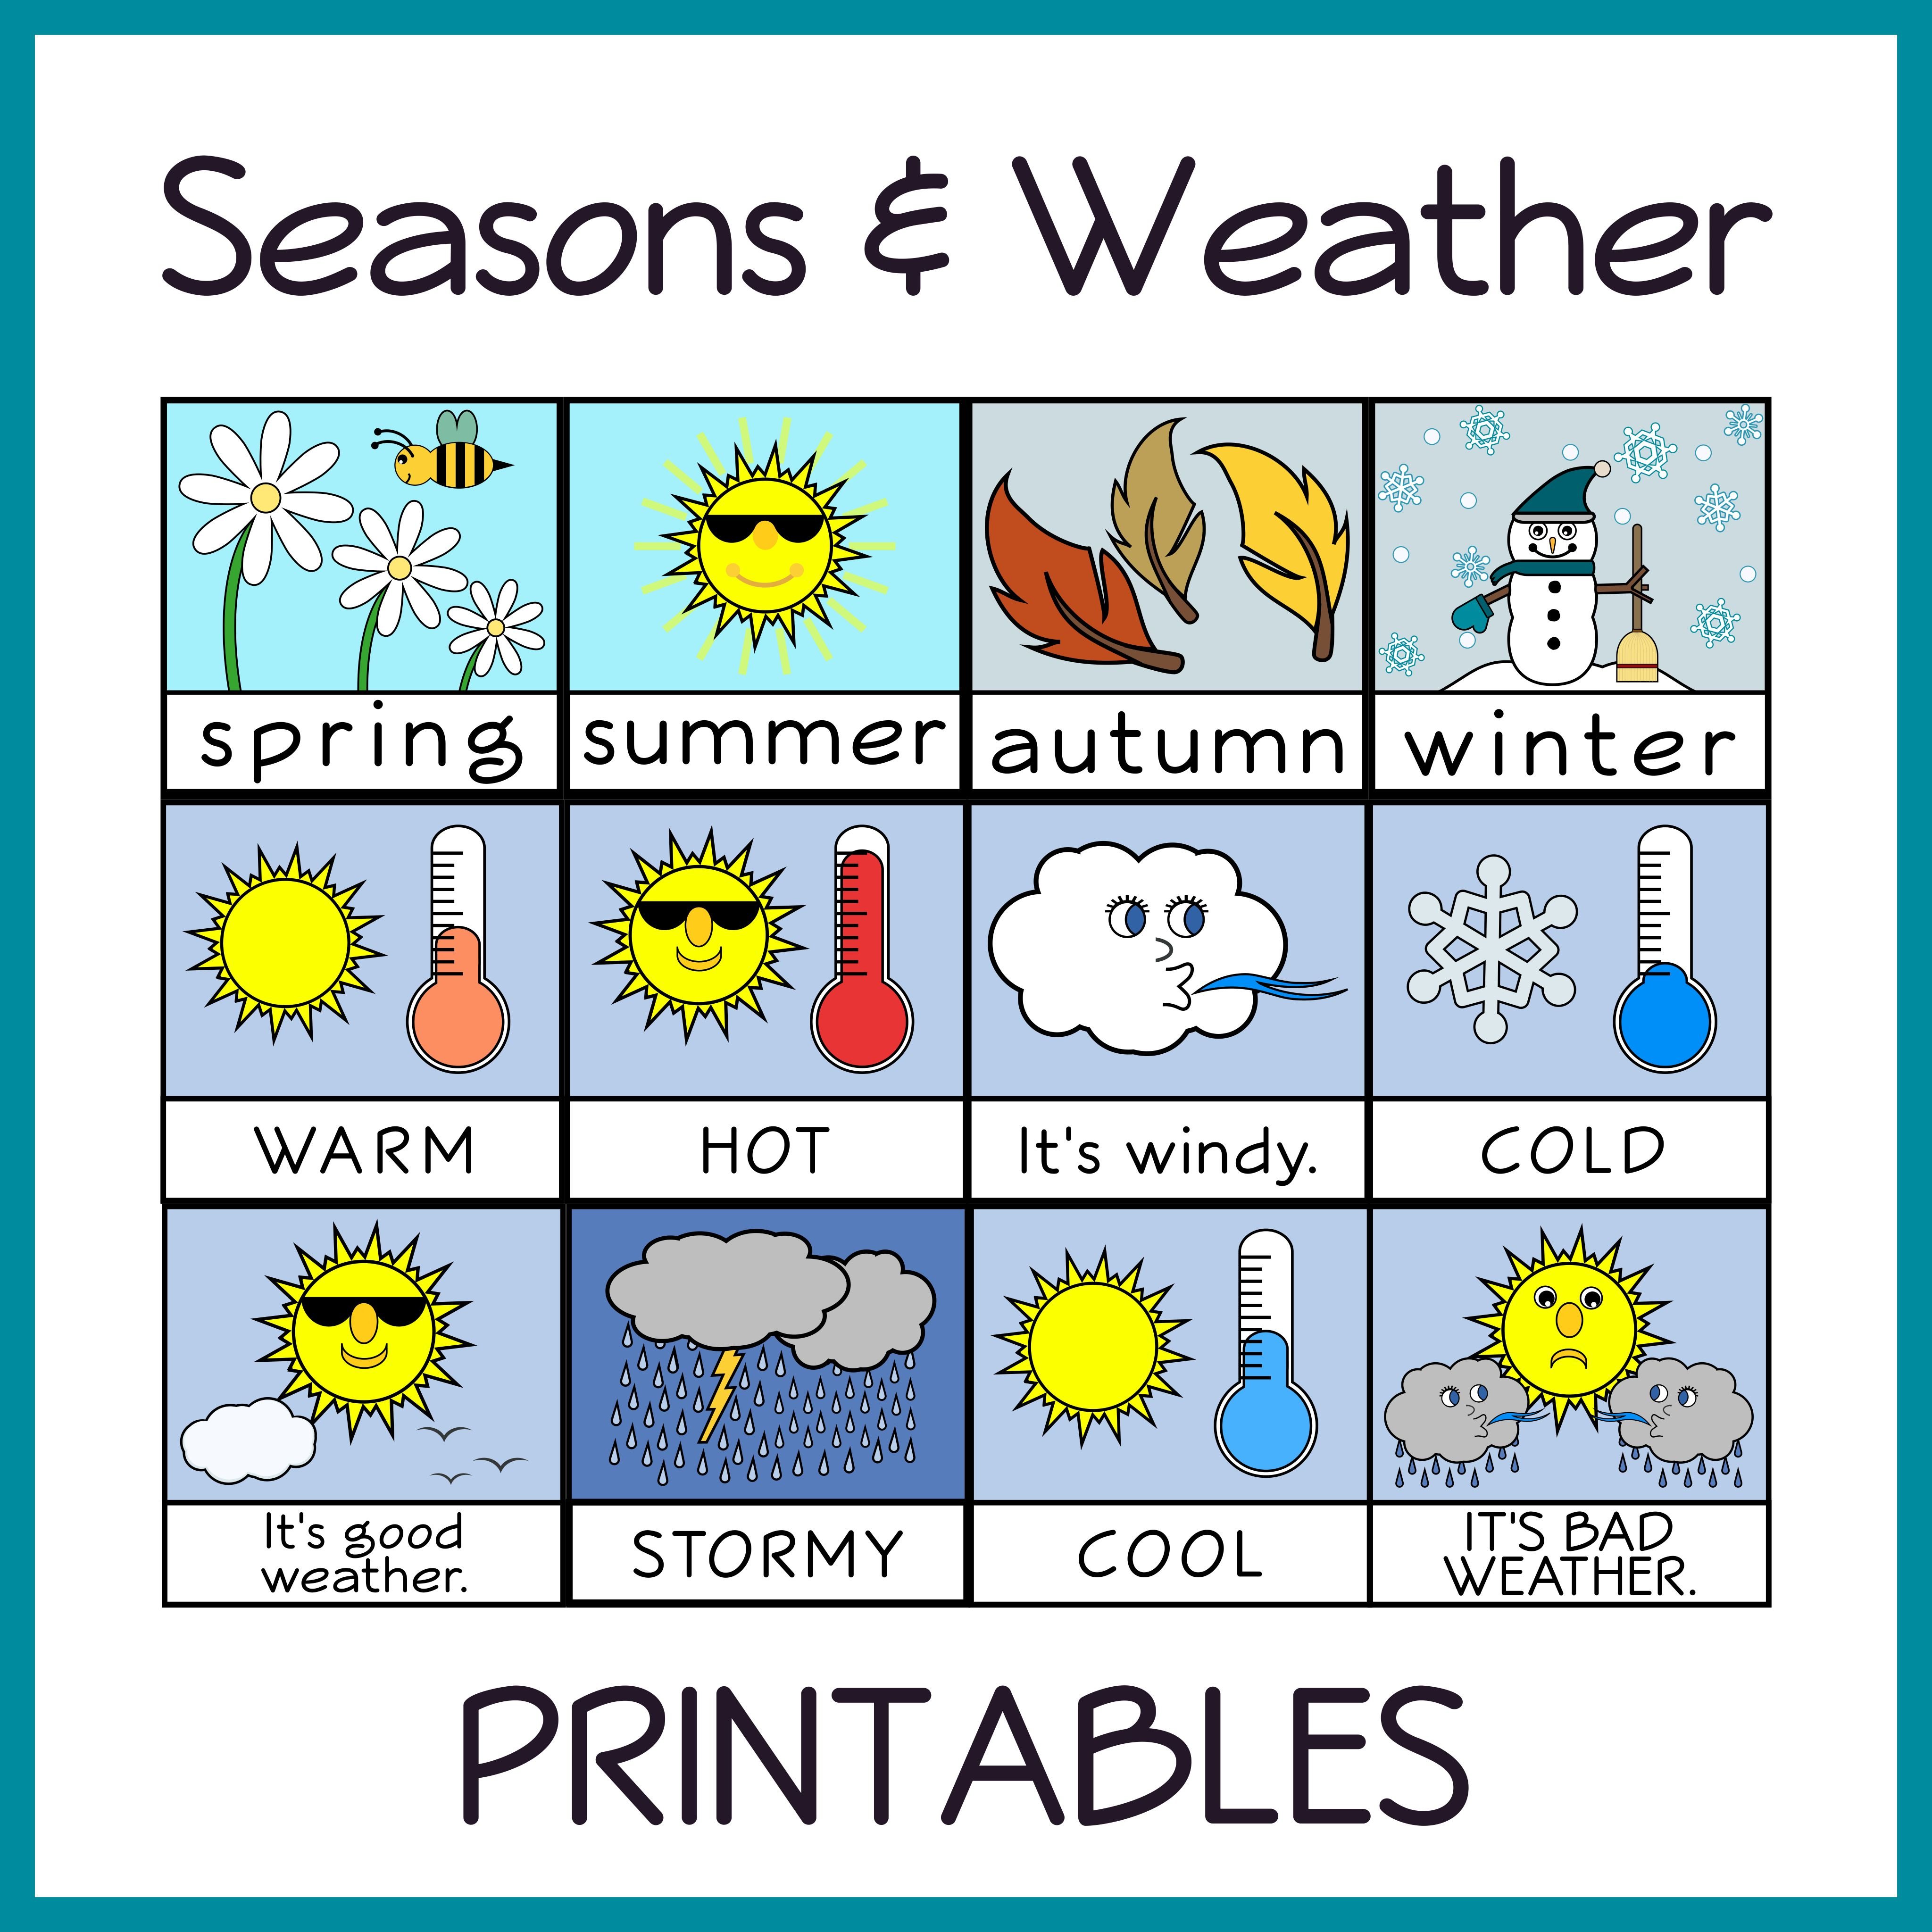 Wx weather. Погода на английском. Тема Seasons and weather. Weather на английском. Weather английский язык.